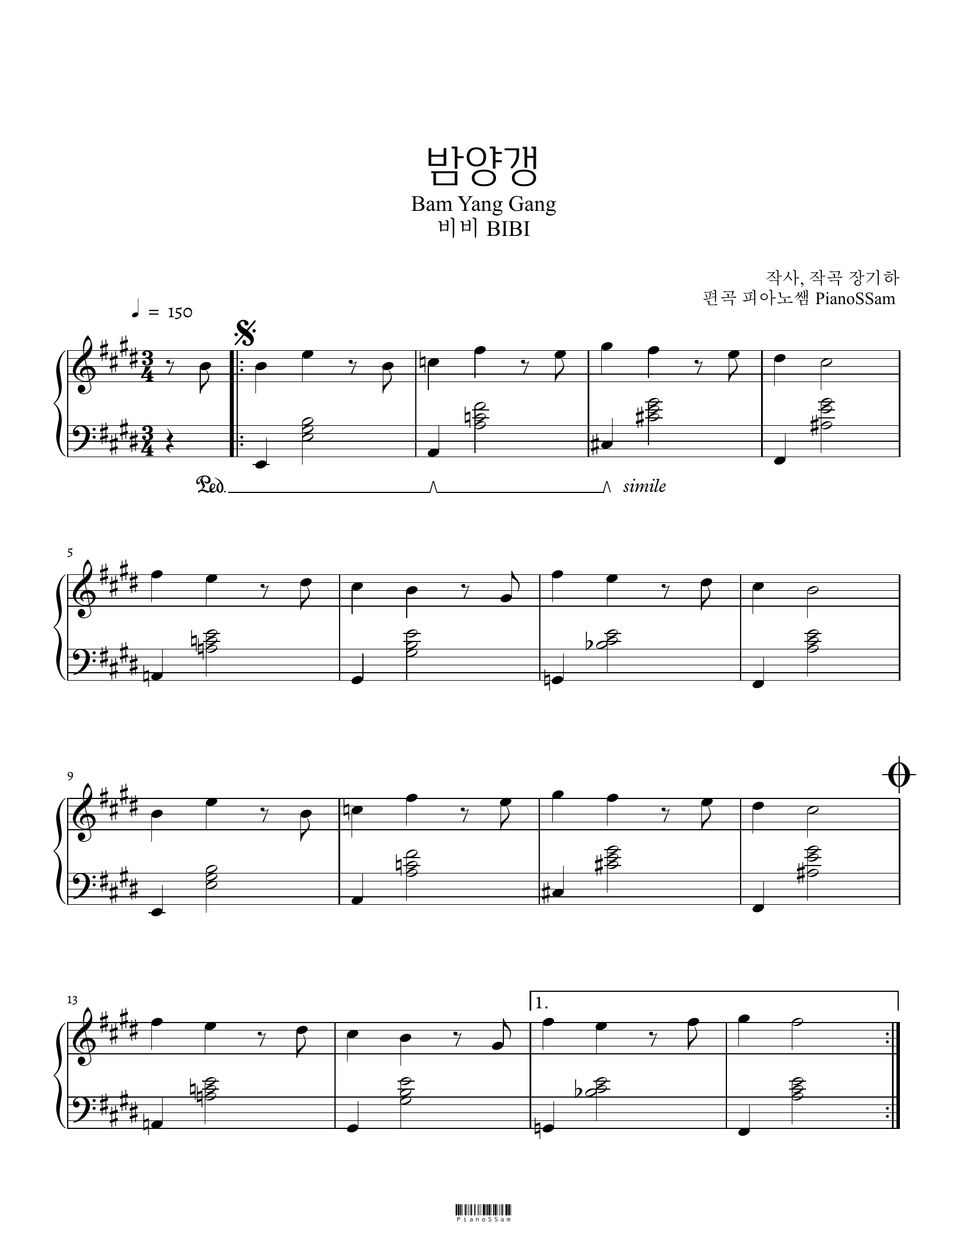 비비 - 밤양갱 (K-pop) by PianoSSam